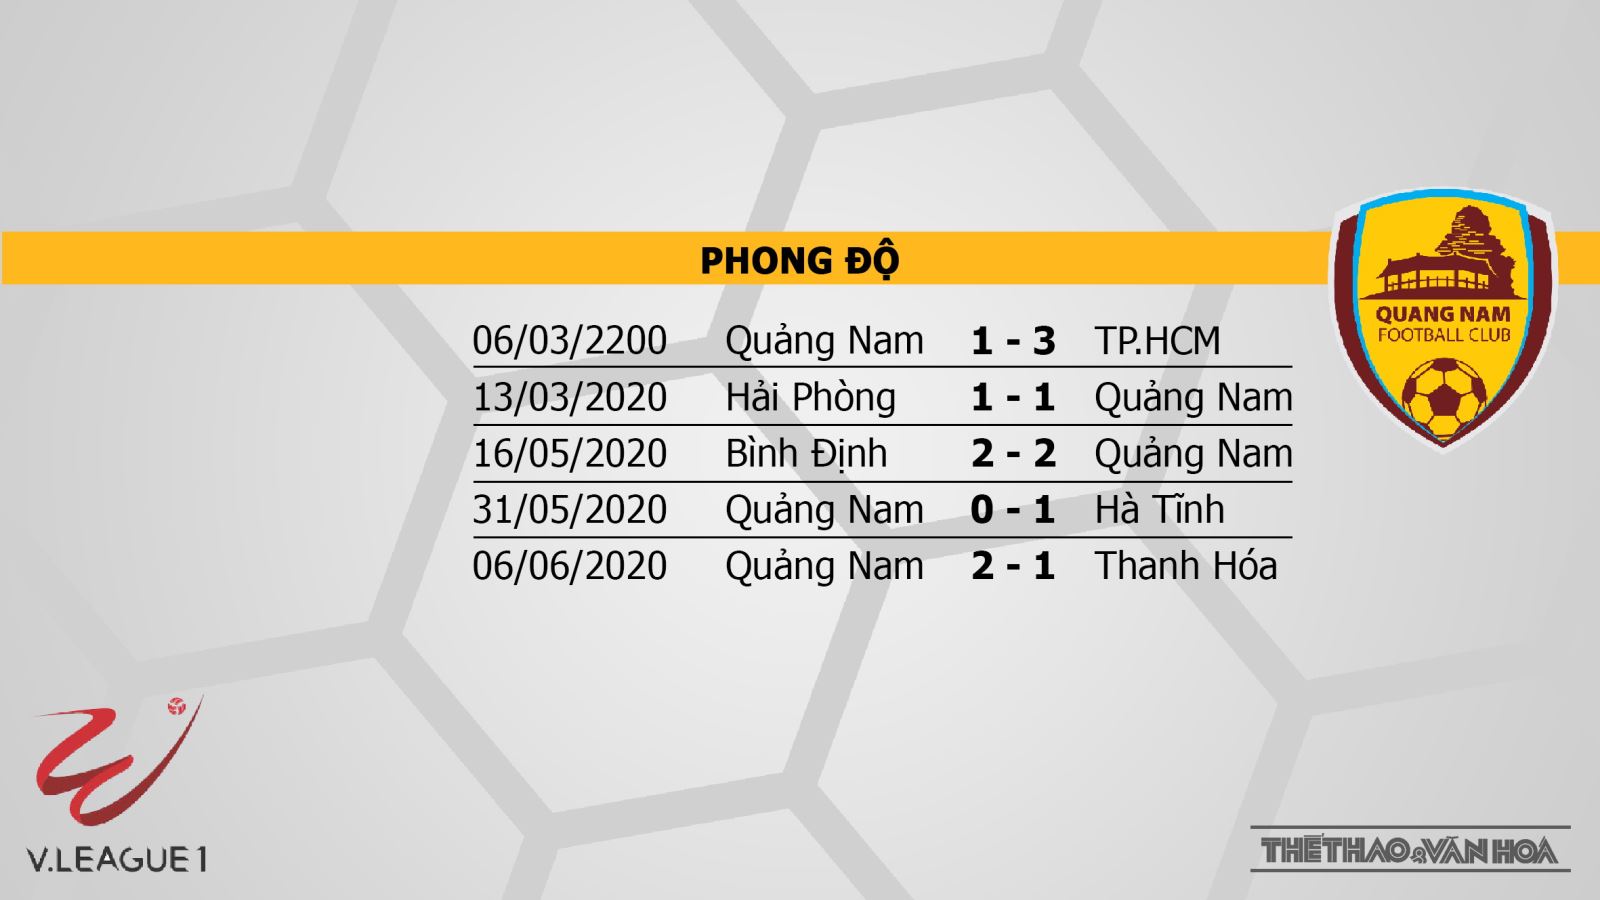 SHB Đà Nẵng vs Quảng Nam, Đà Nẵng đấu với Quảng Nam, nhận định, dự đoán bóng đá, kèo bóng đá, V-League